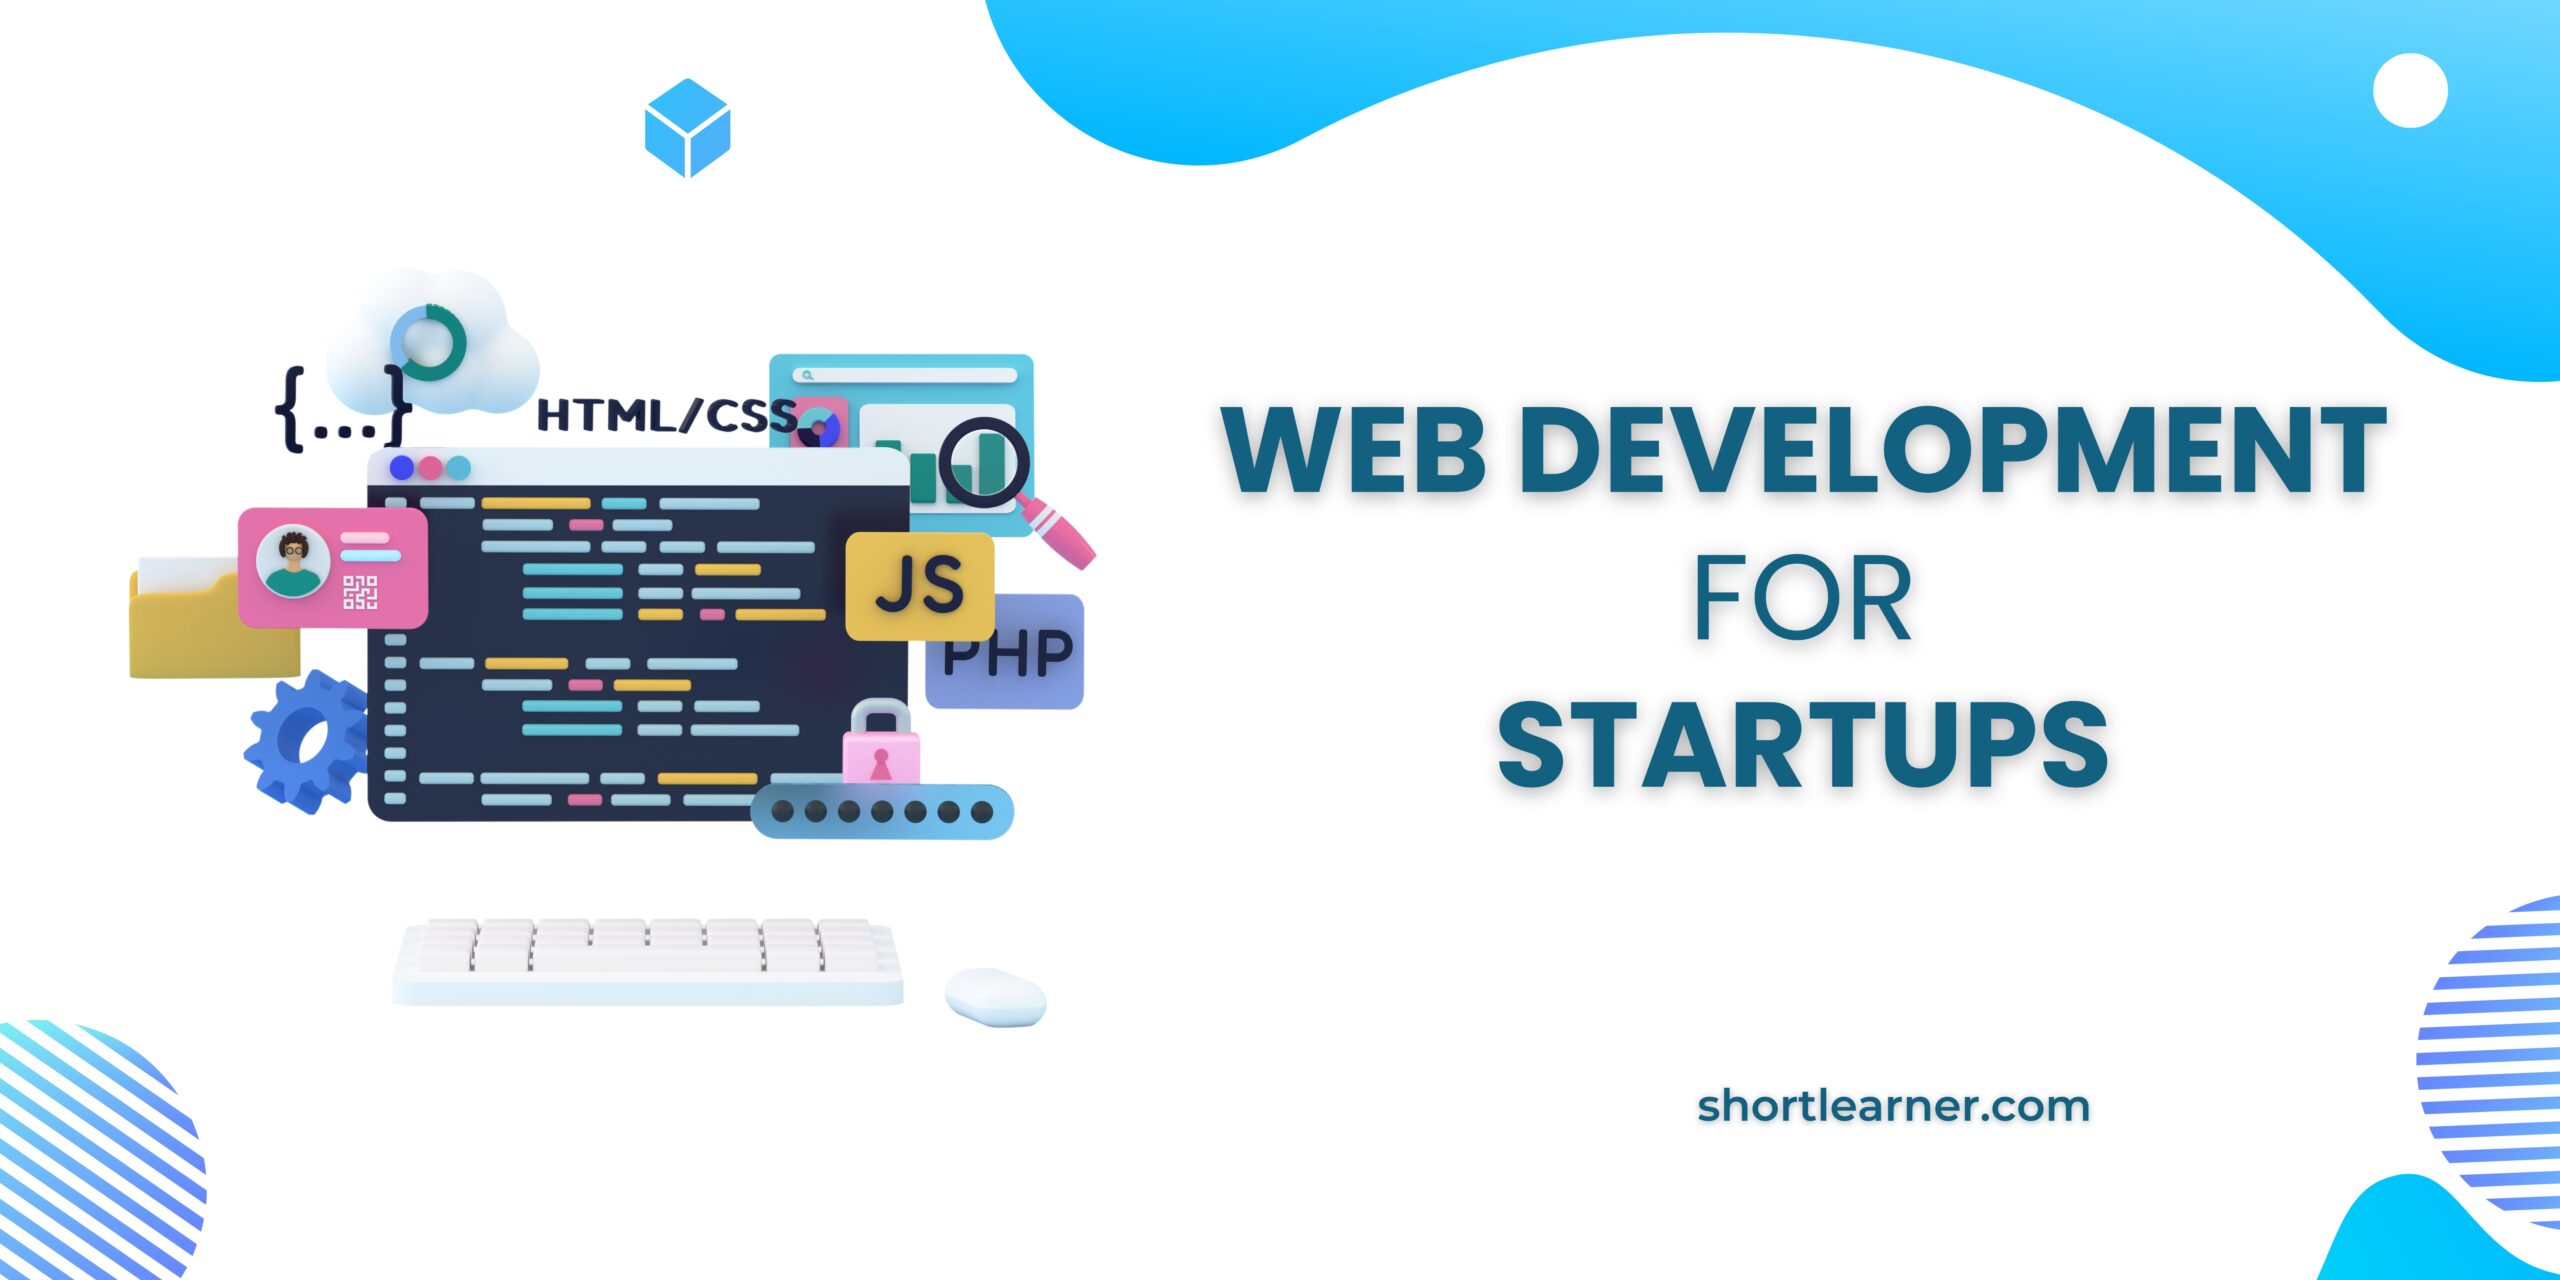 Web Development for Startups